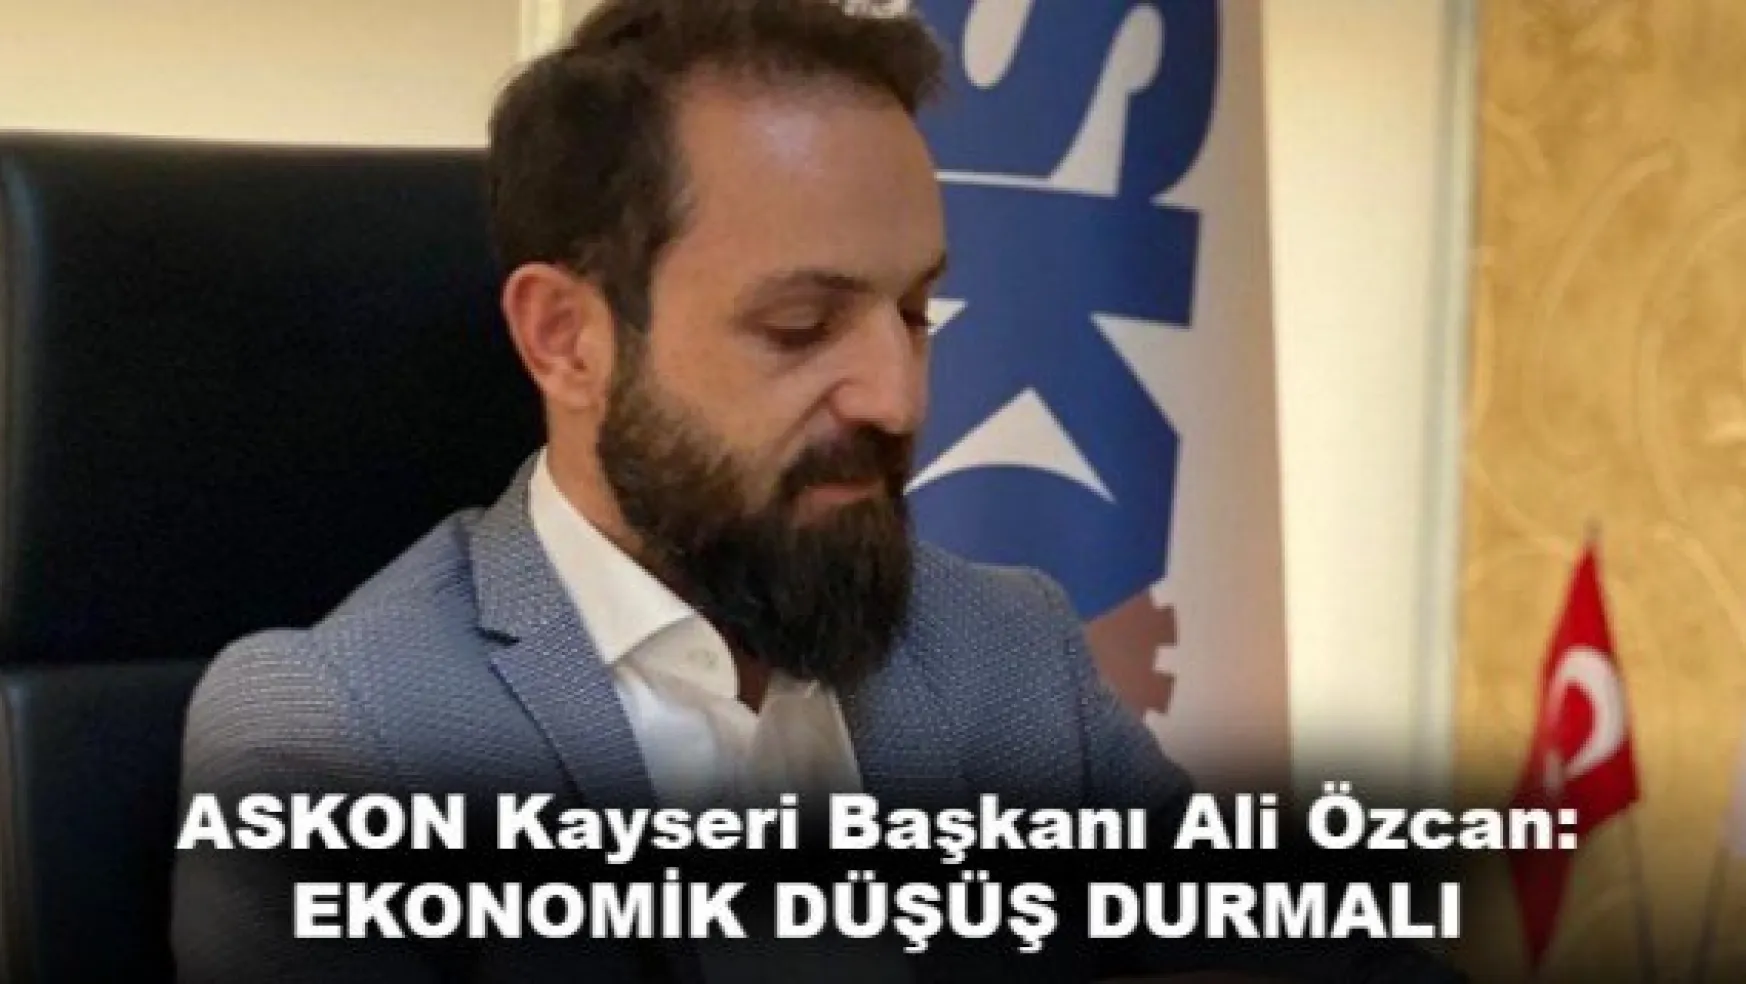 Anadolu Aslanları İşadamları Derneği (ASKON) Kayseri Başkanı Ali Özcan: EKONOMİK DÜŞÜŞ DURMALI